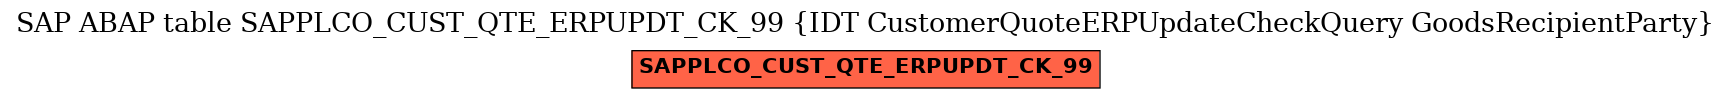 E-R Diagram for table SAPPLCO_CUST_QTE_ERPUPDT_CK_99 (IDT CustomerQuoteERPUpdateCheckQuery GoodsRecipientParty)